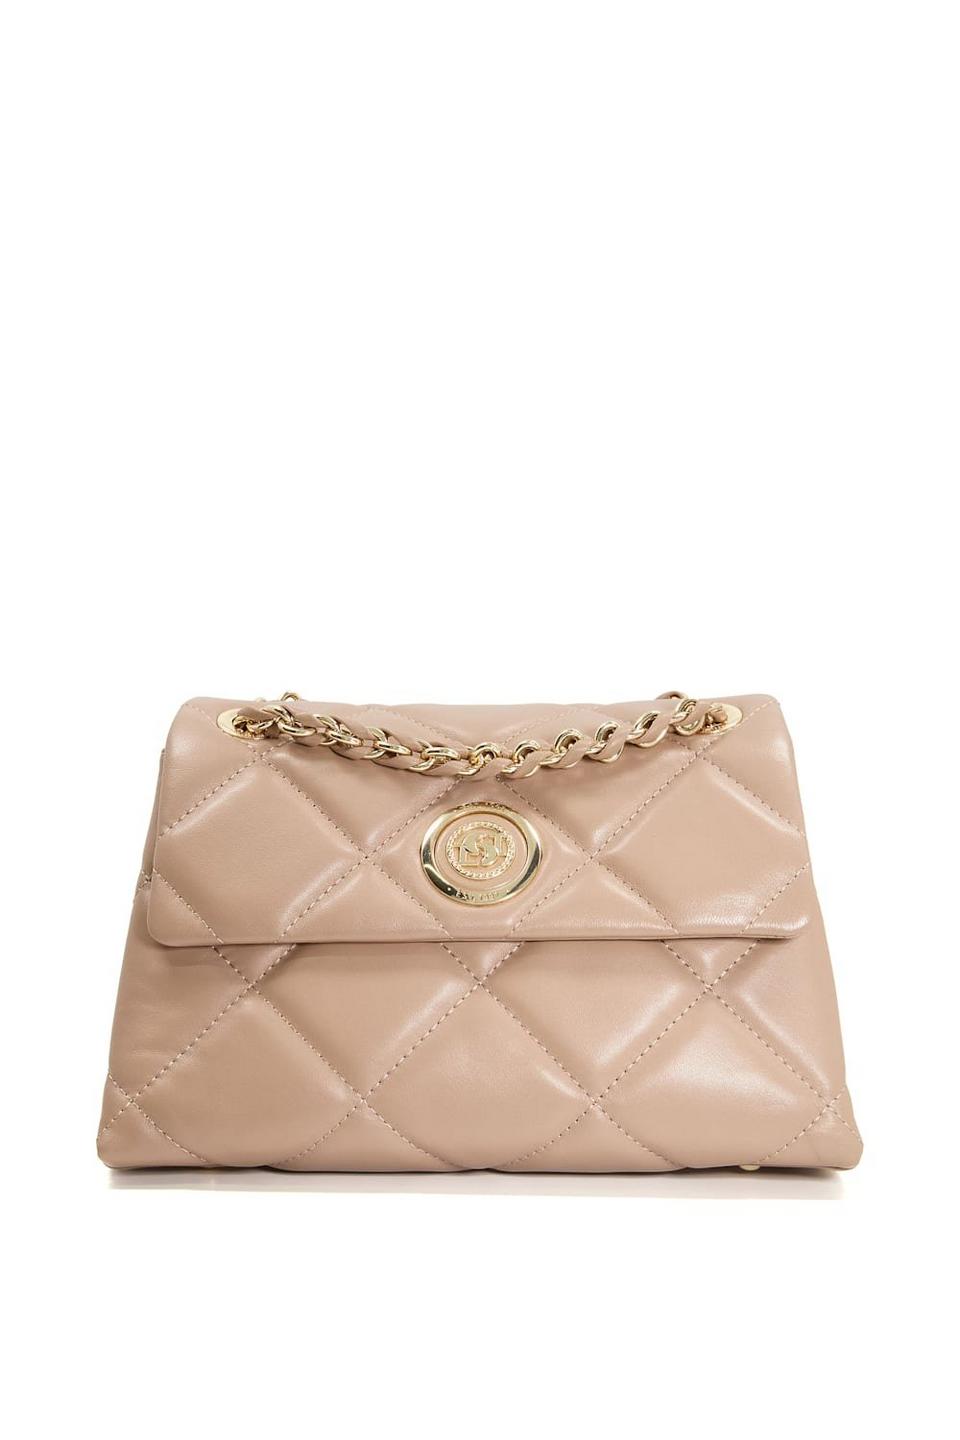 Bags & Purses | 'Duchess' Leather Shoulder Bag | Dune London